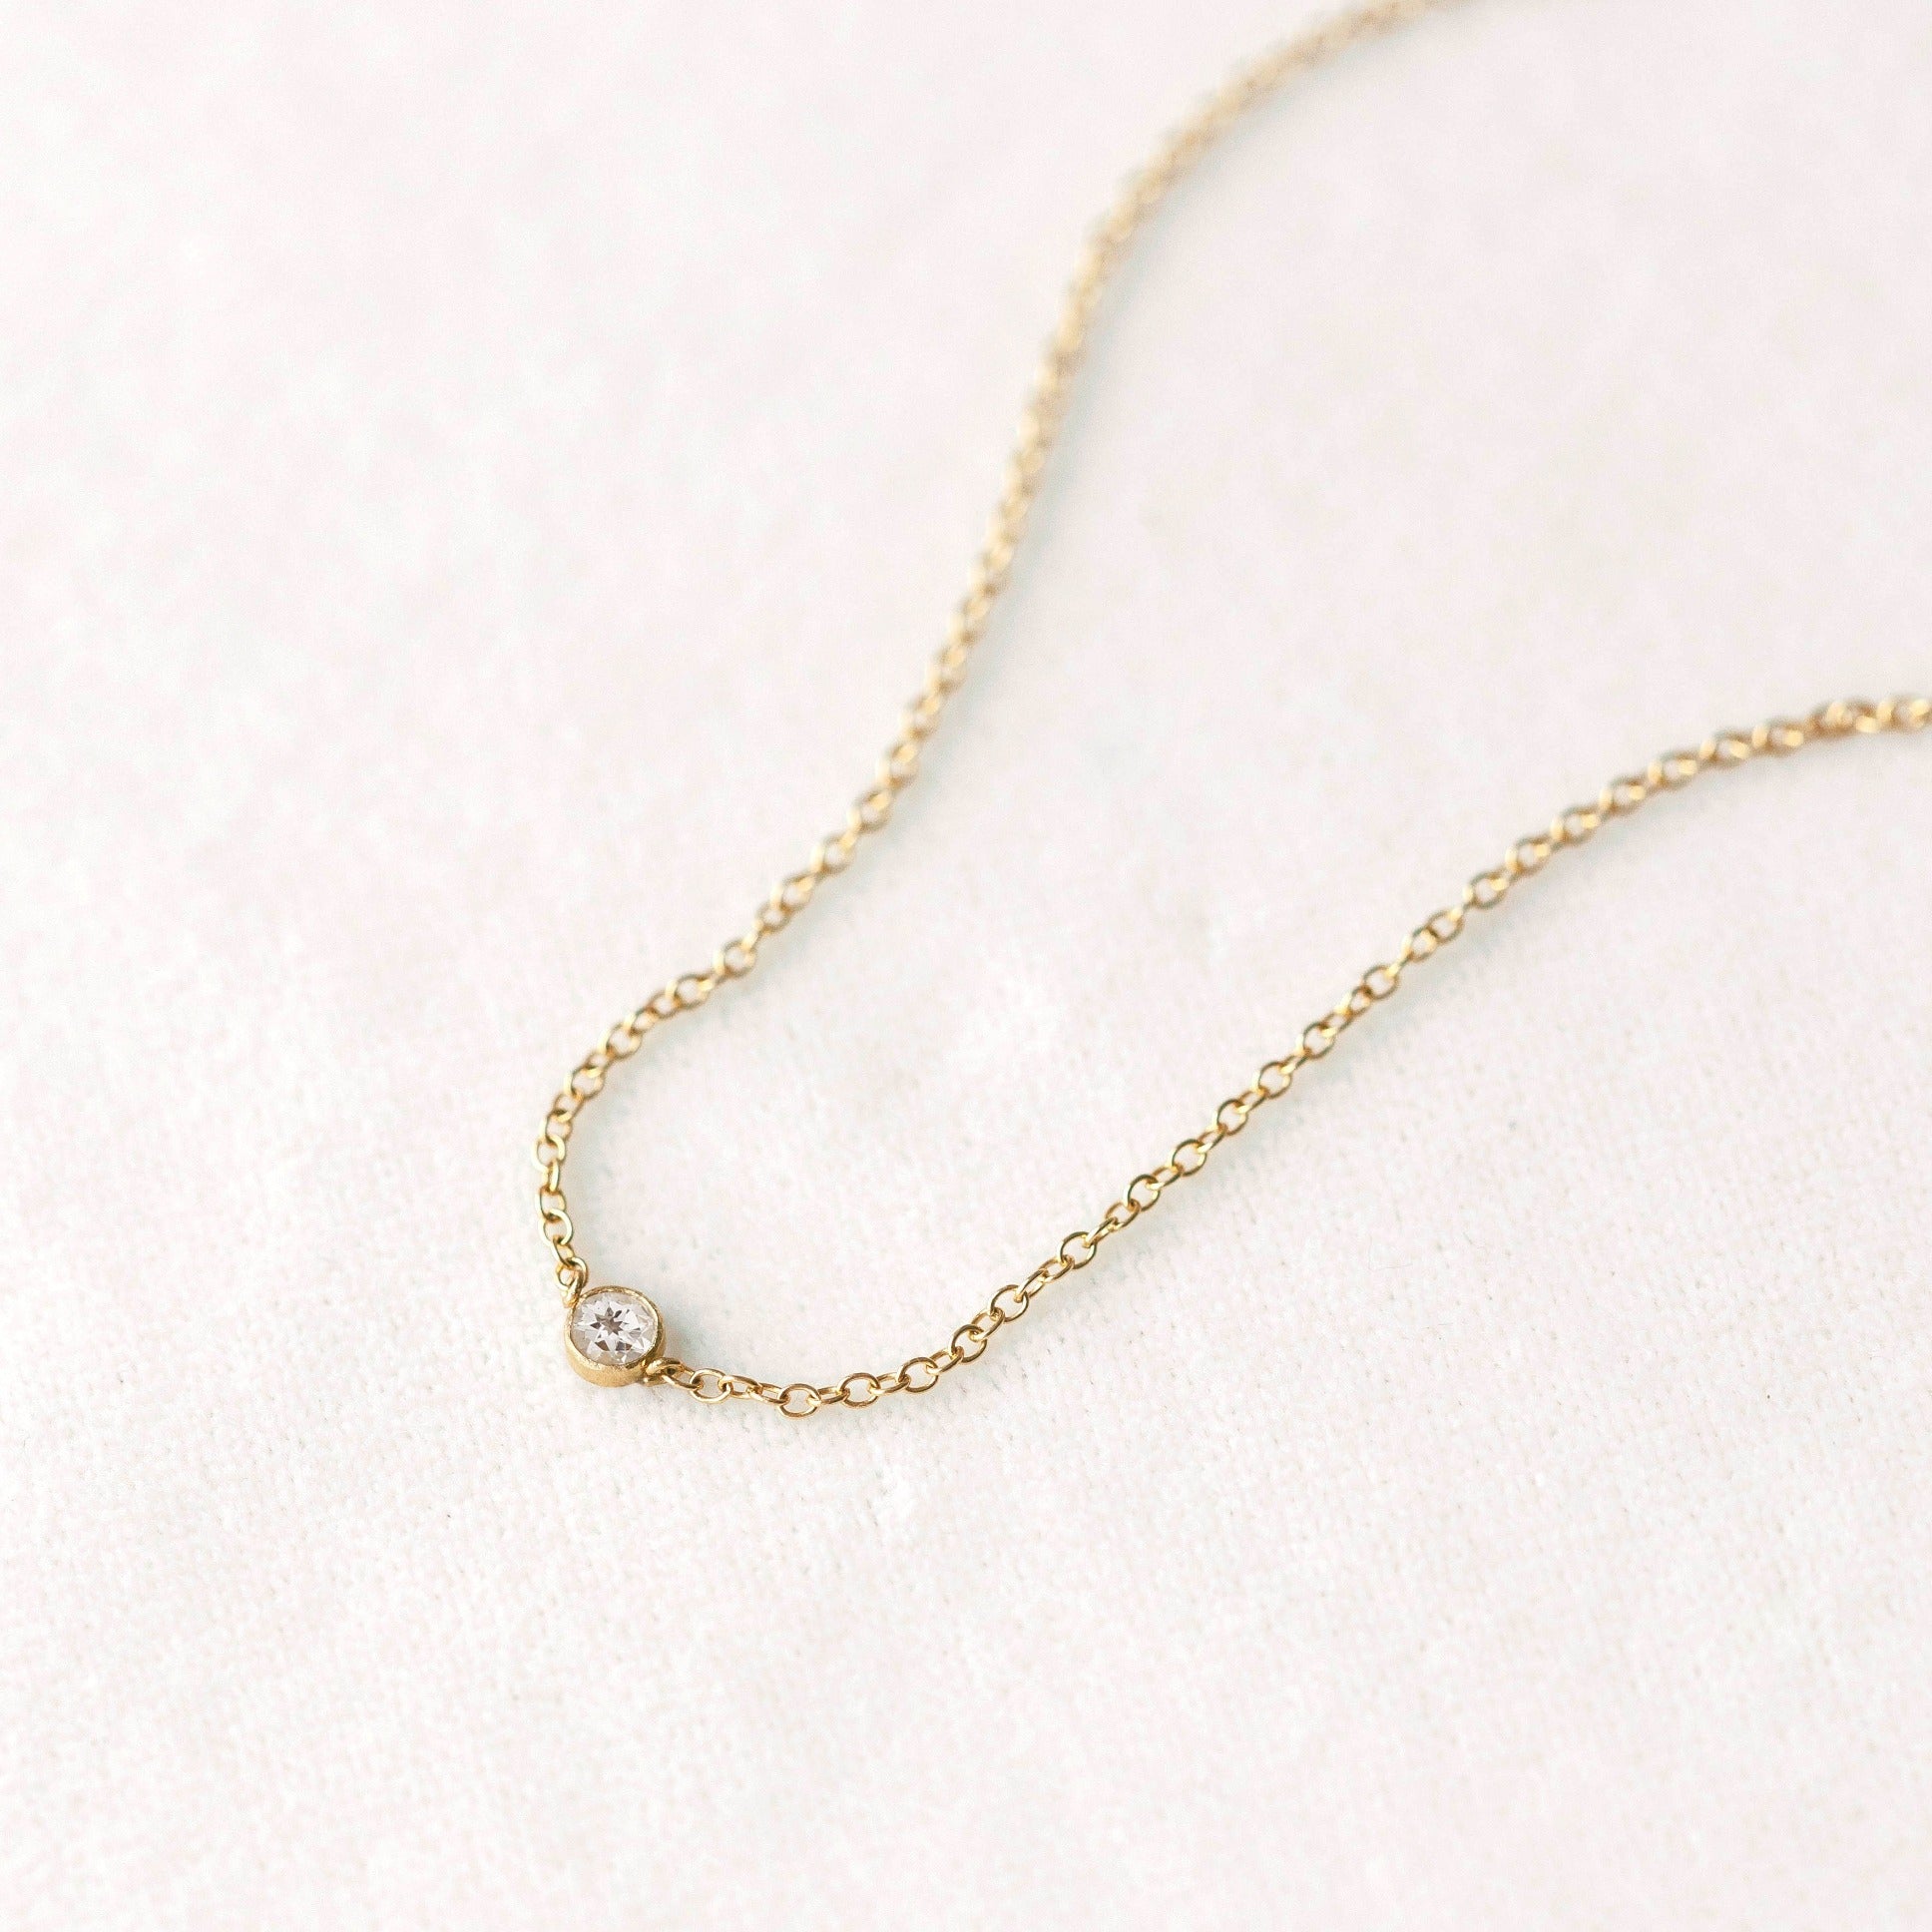 Tiny white topaz gemstone pendant